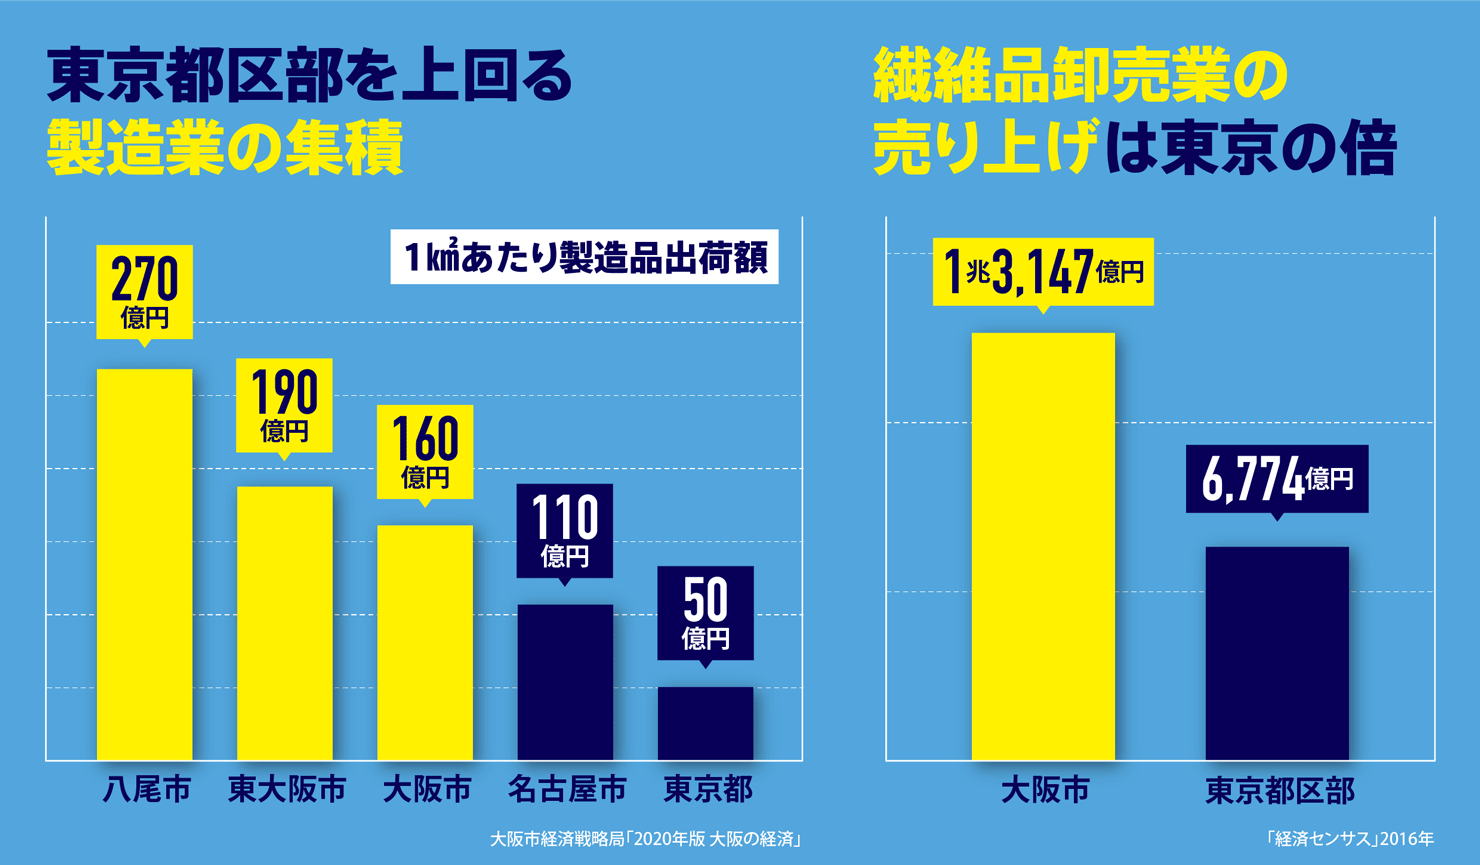 製造業の出荷額：東京・名古屋と比較を示す。繊維品卸業の売り上げは東京の倍であることを示す図